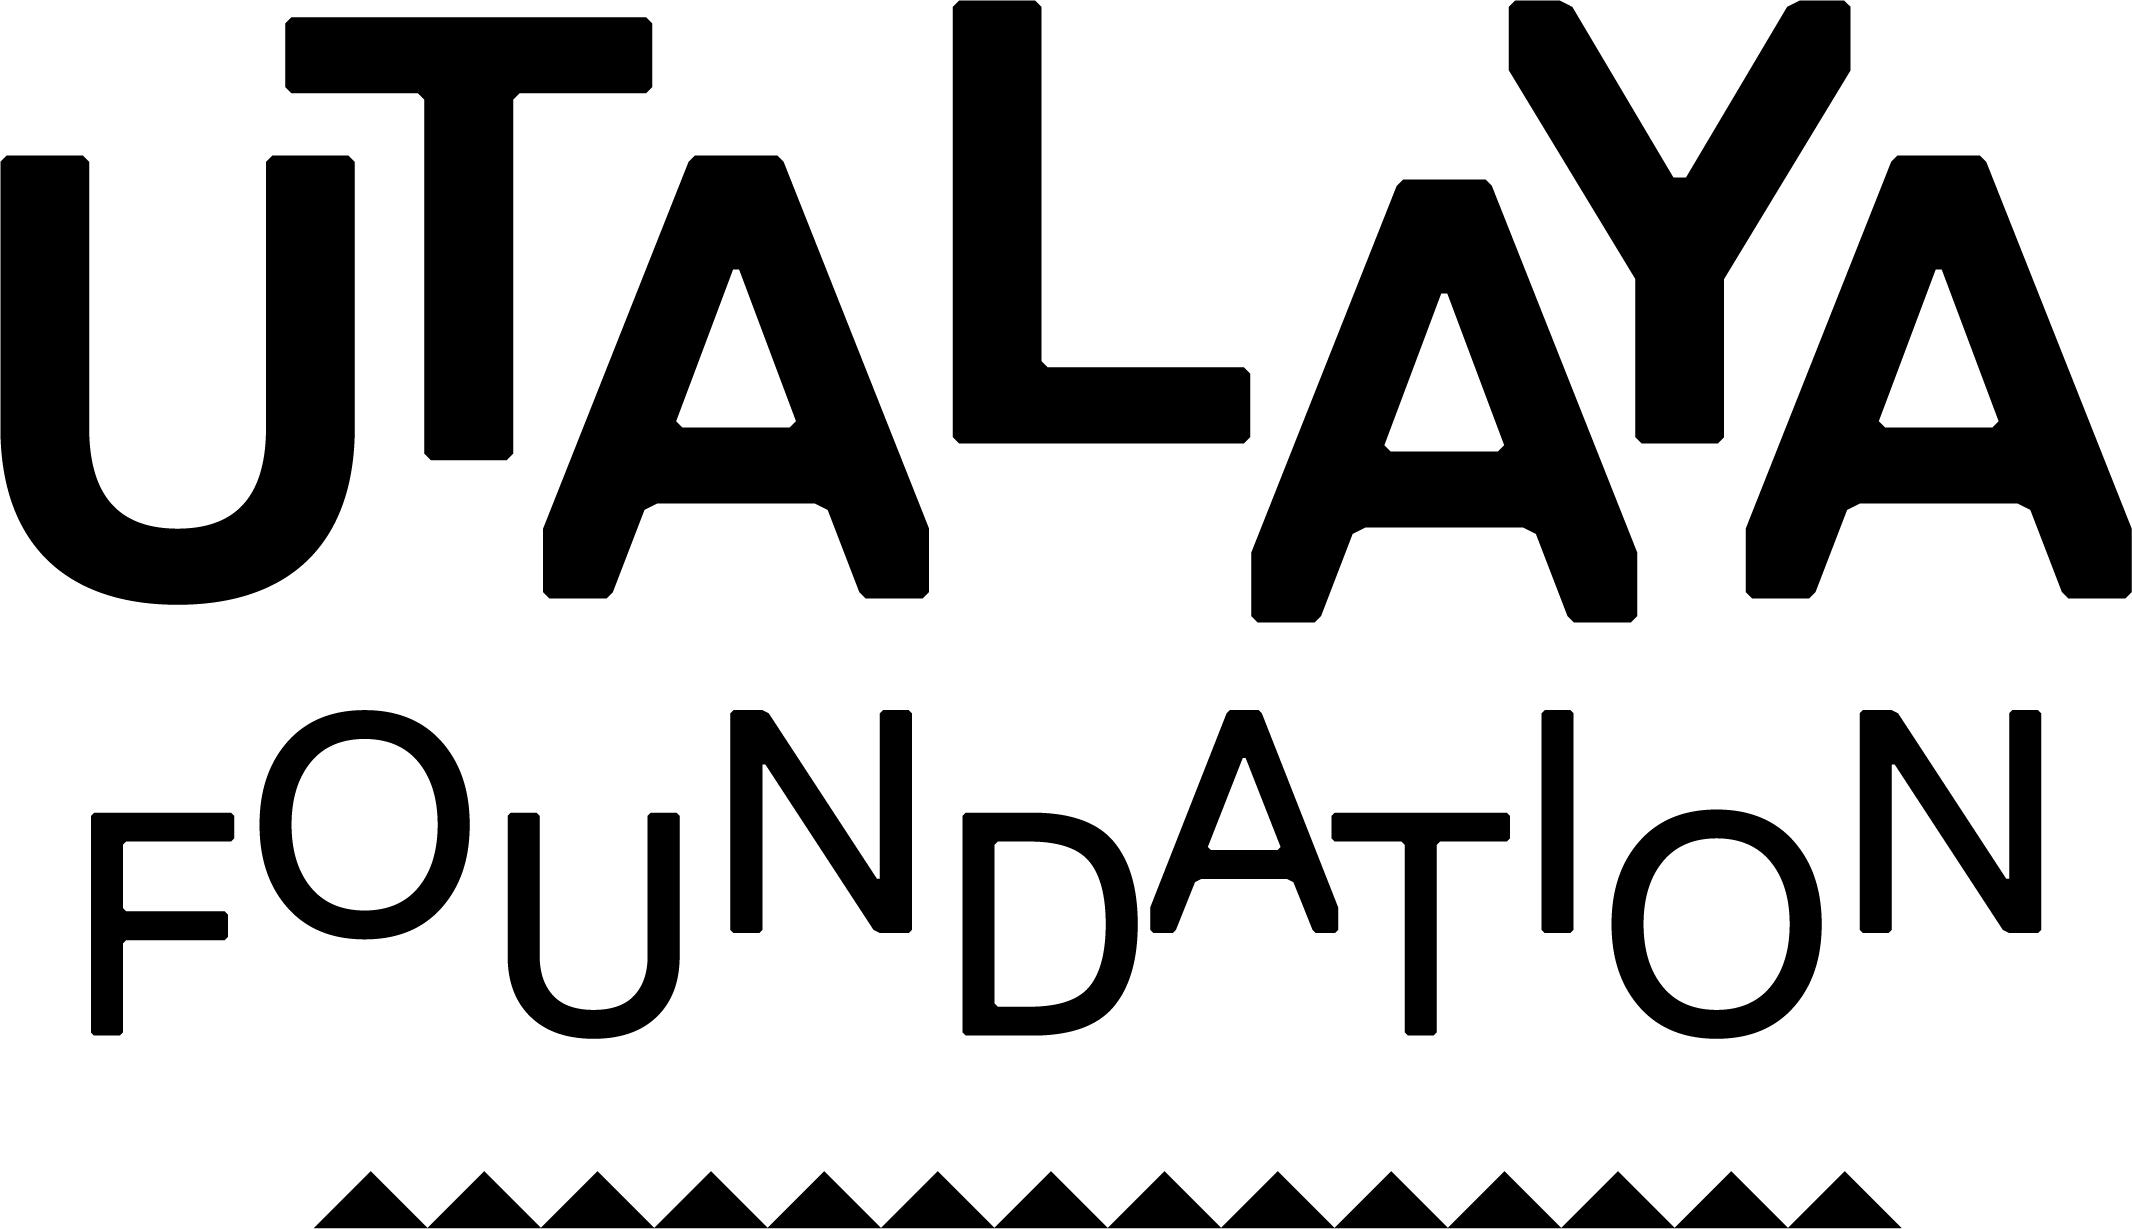 Utalaya Foundation